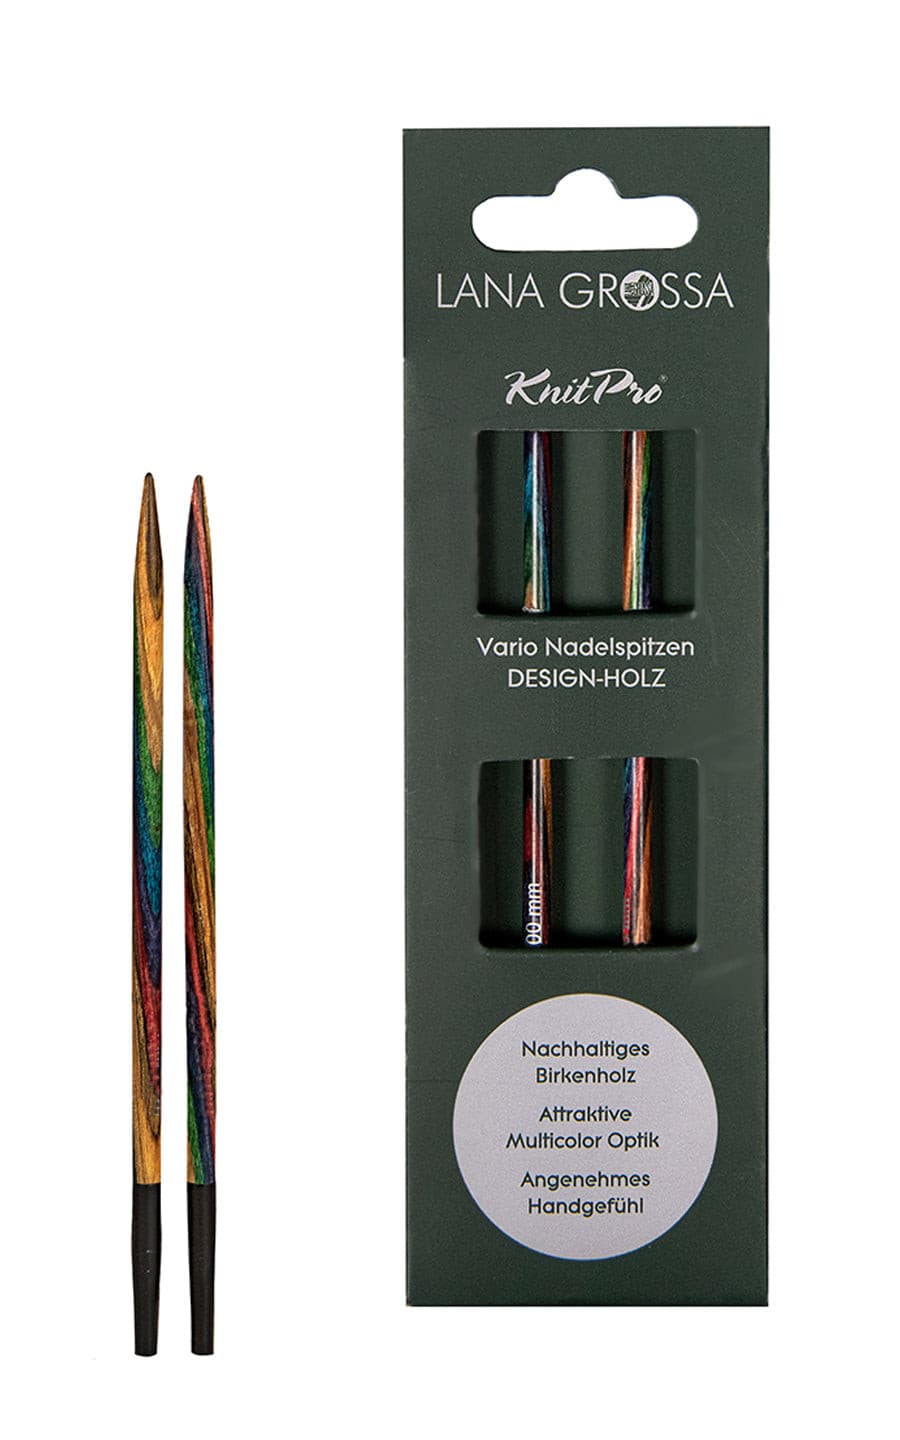 3,0 mm Nadelspitze Vario aus Holz - neue Verpackung von LANA GROSSA jetzt online kaufen bei OONIQUE